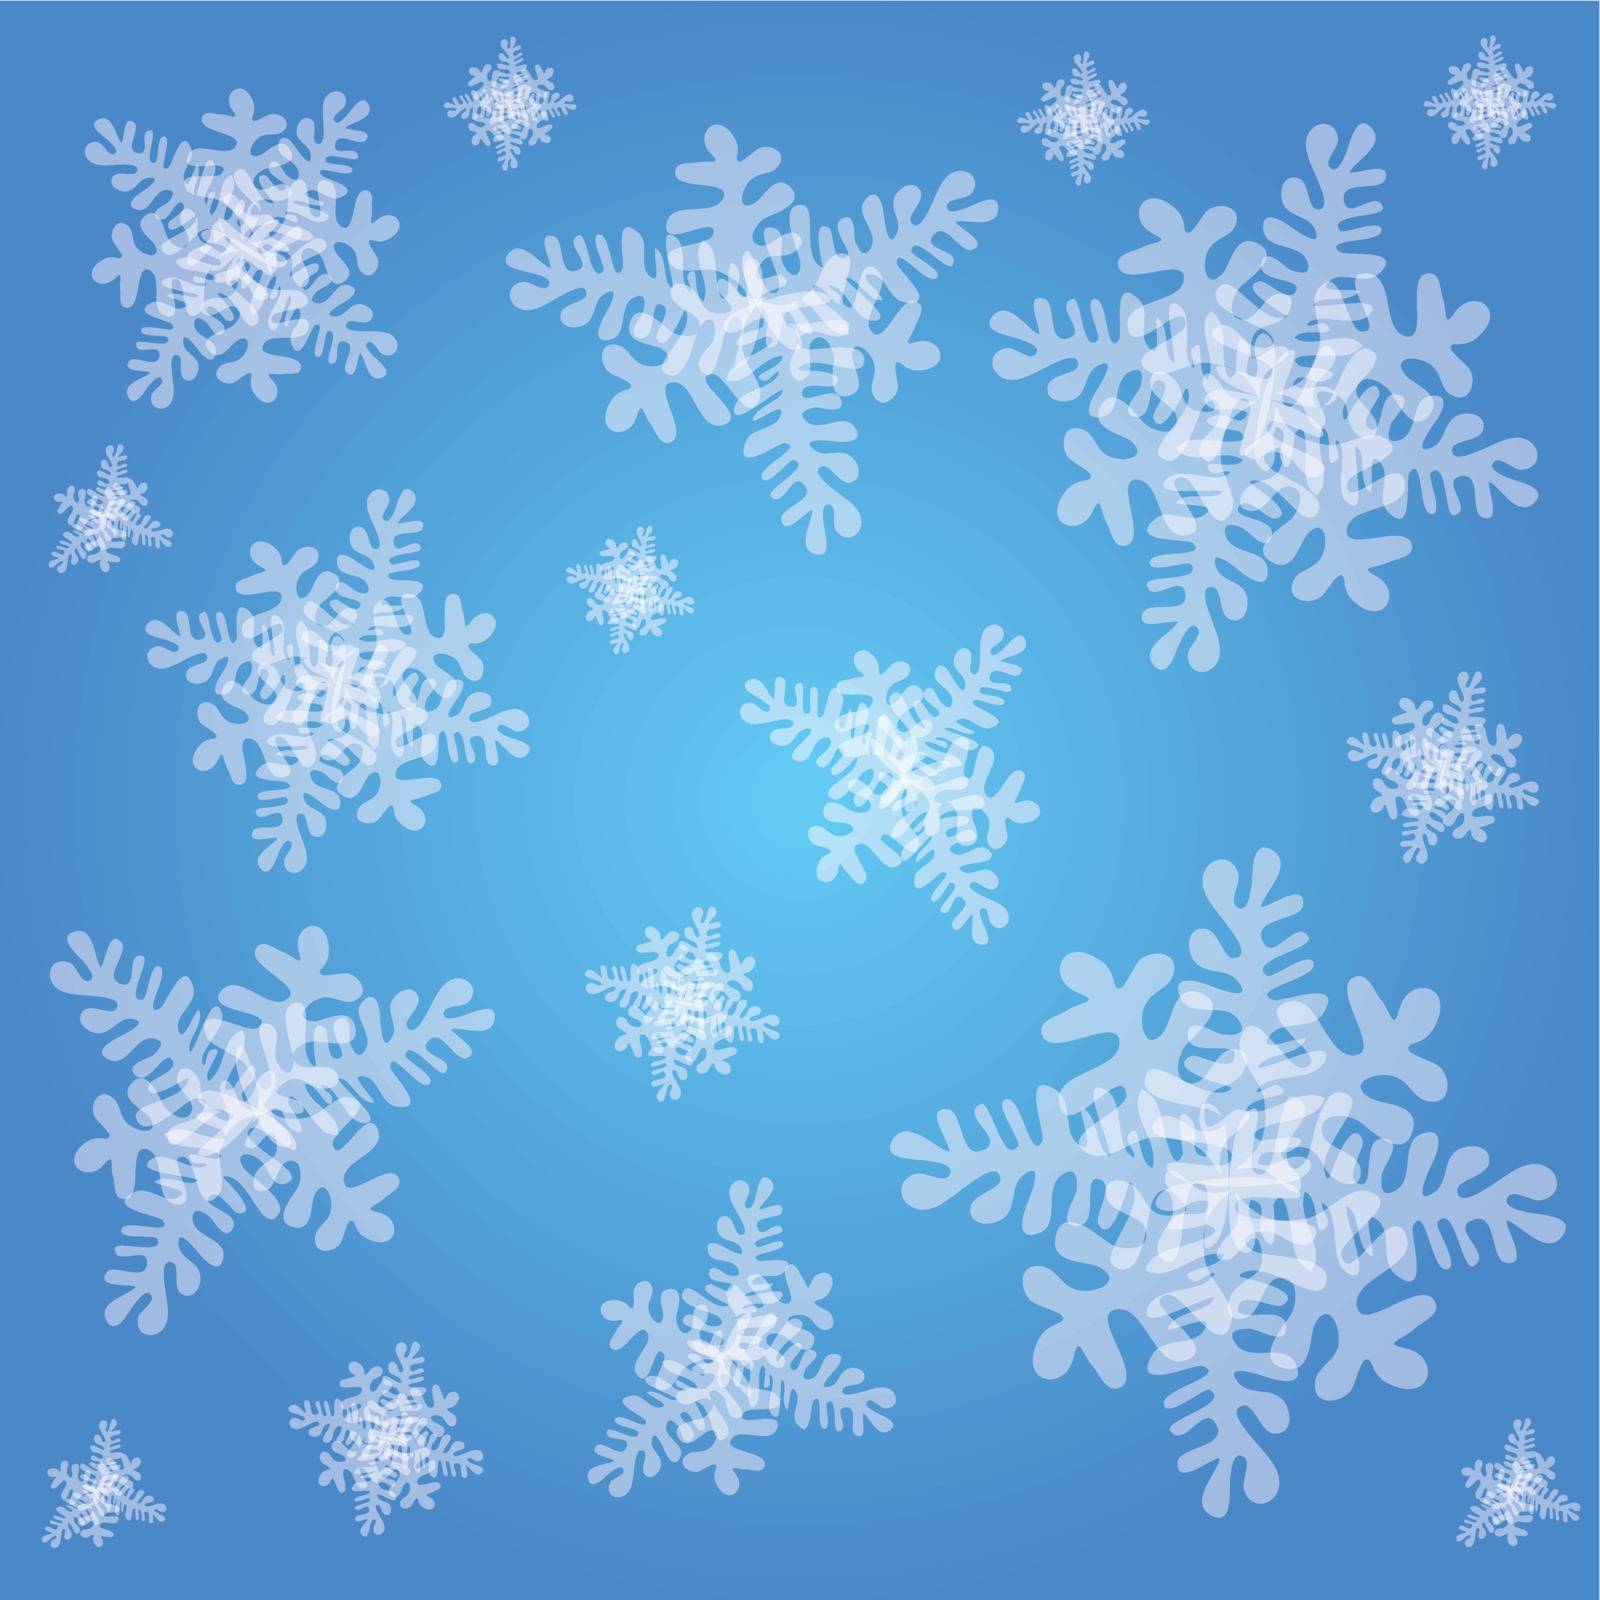 Snowflakes by Portokalis